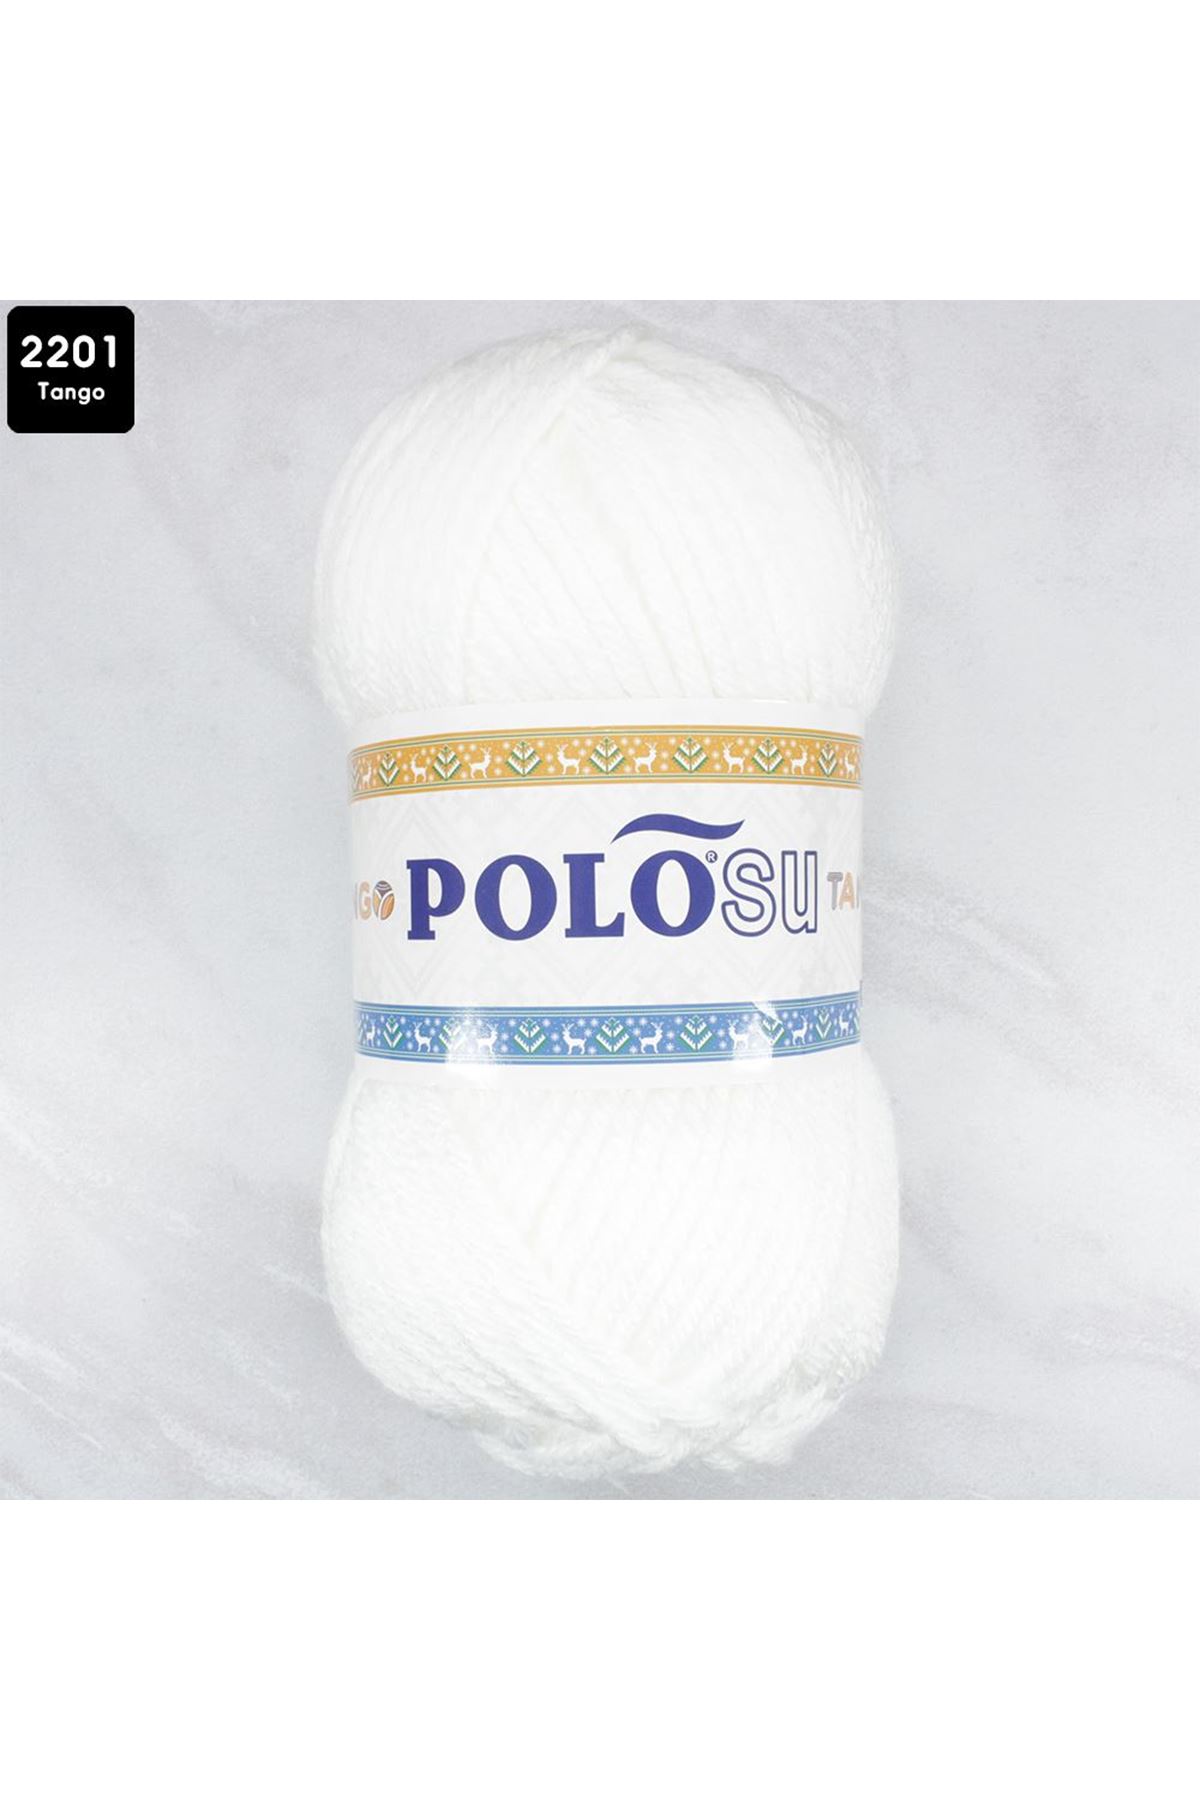 PoloSU Tango Renk No: 2201